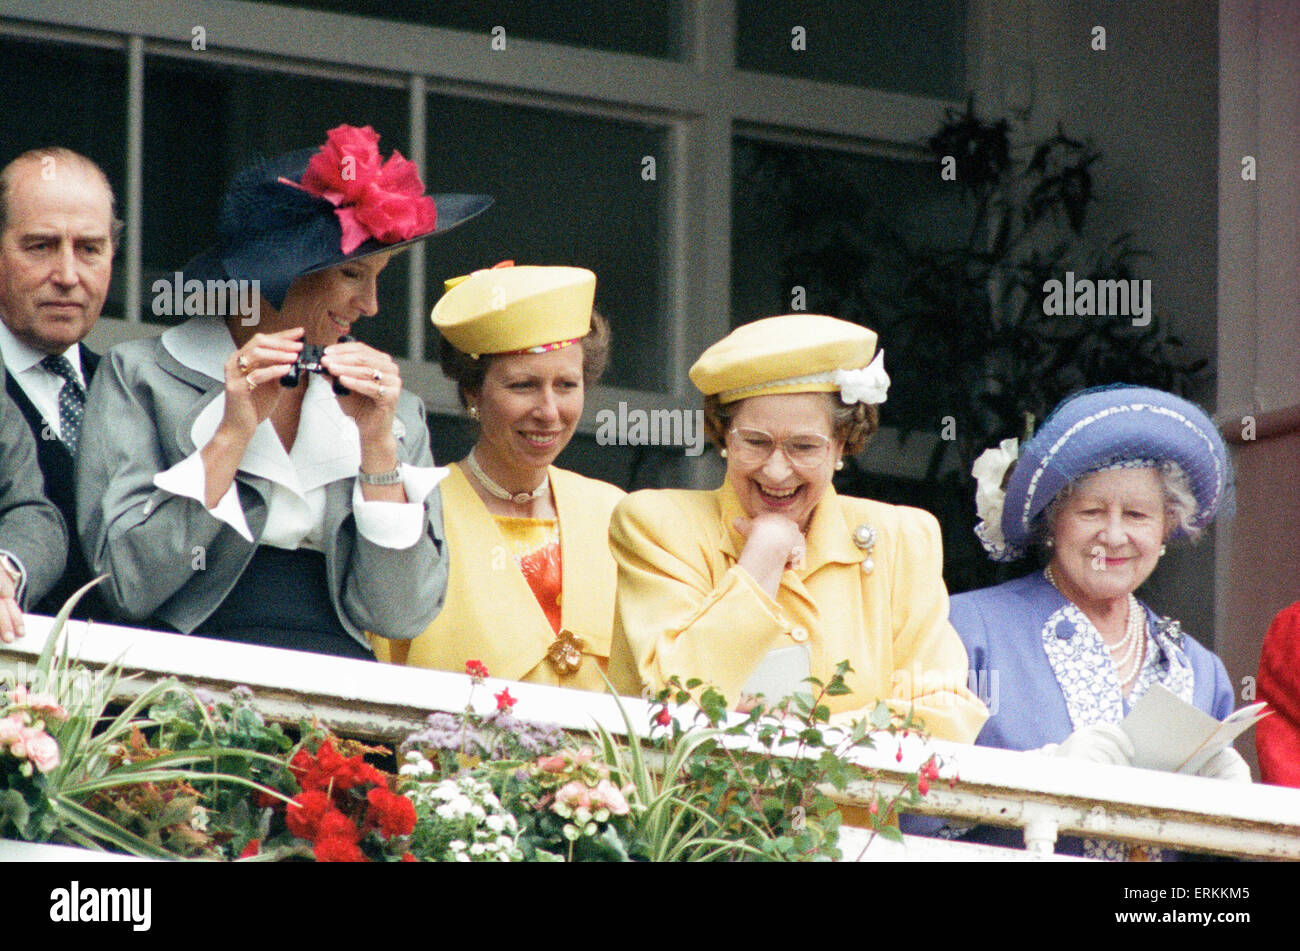 La regina Elisabetta II, Derby giorno, ippodromo di Epsom Downs, mercoledì 1 giugno 1988. Foto Stock